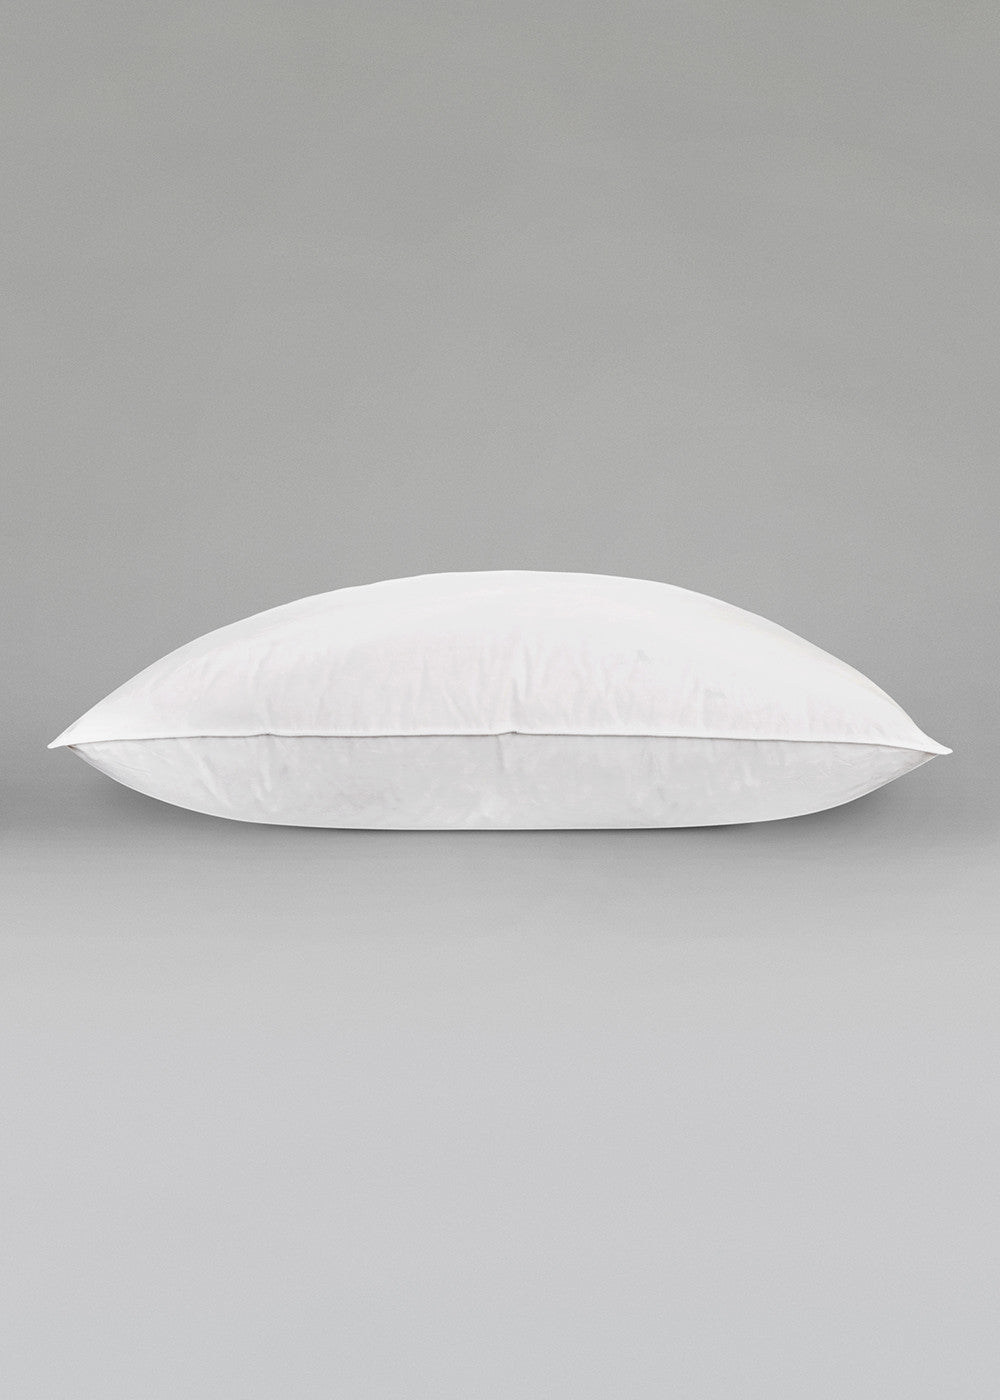 Saona Bi comfort Pillow-2